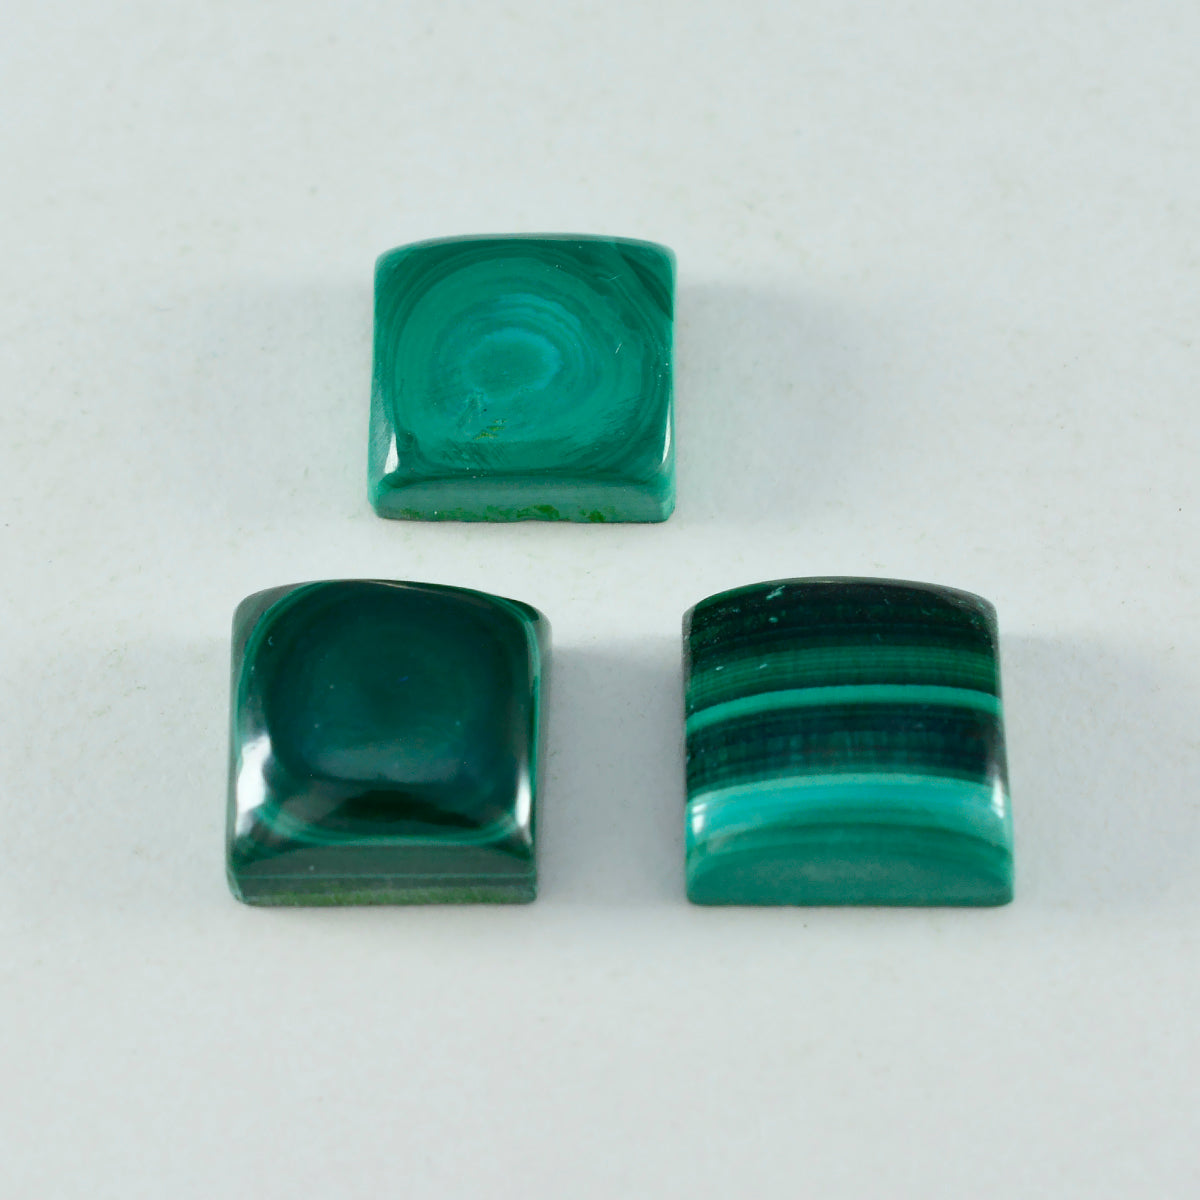 riyogems 1 pieza cabujón de malaquita verde 13x13 mm forma cuadrada a+1 piedra preciosa suelta de calidad